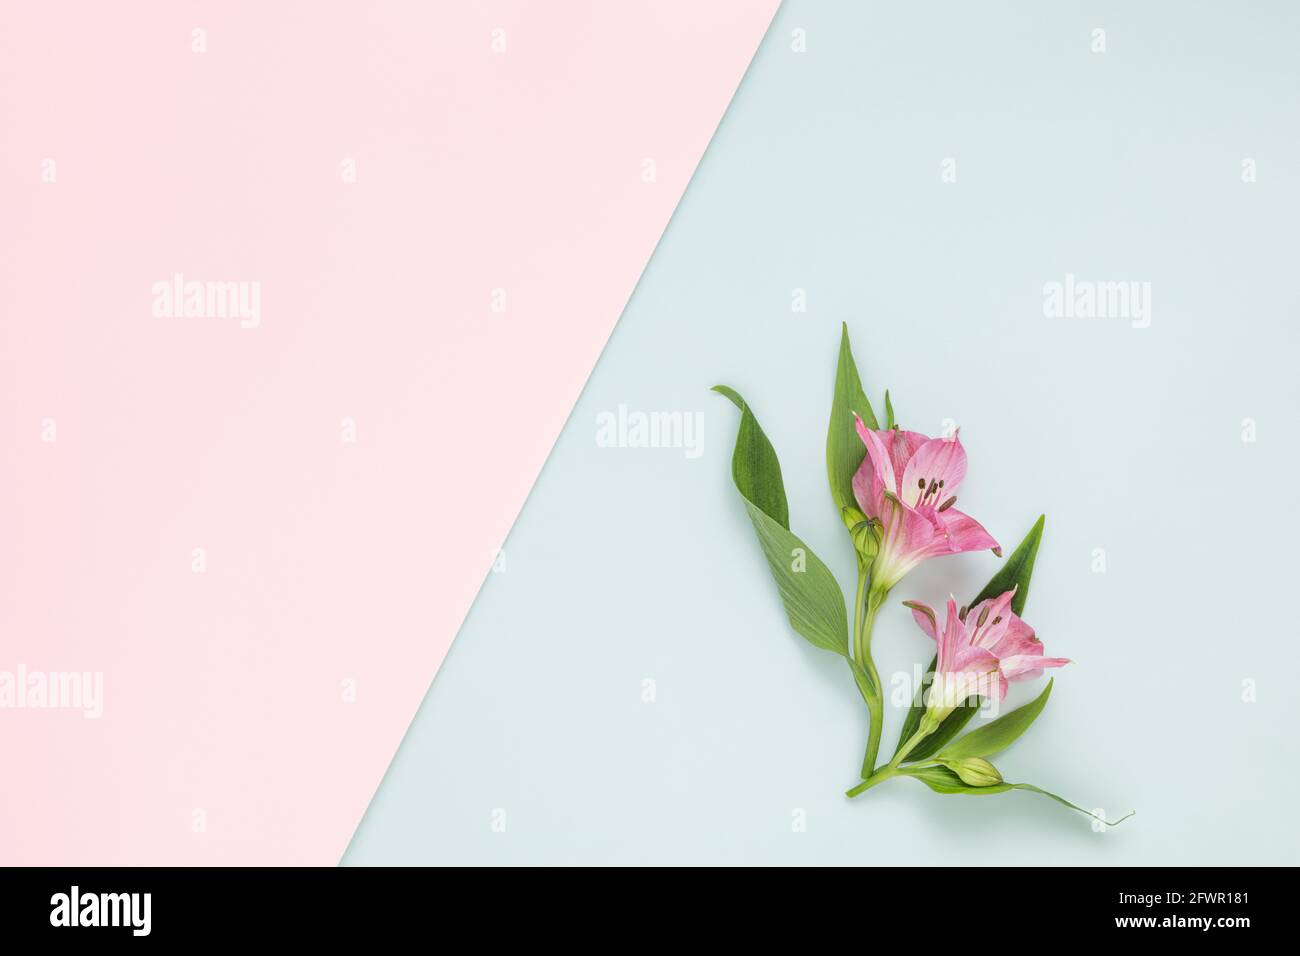 Alstroemerias en papel normal rosa y azul claro con copia espacio Foto de stock